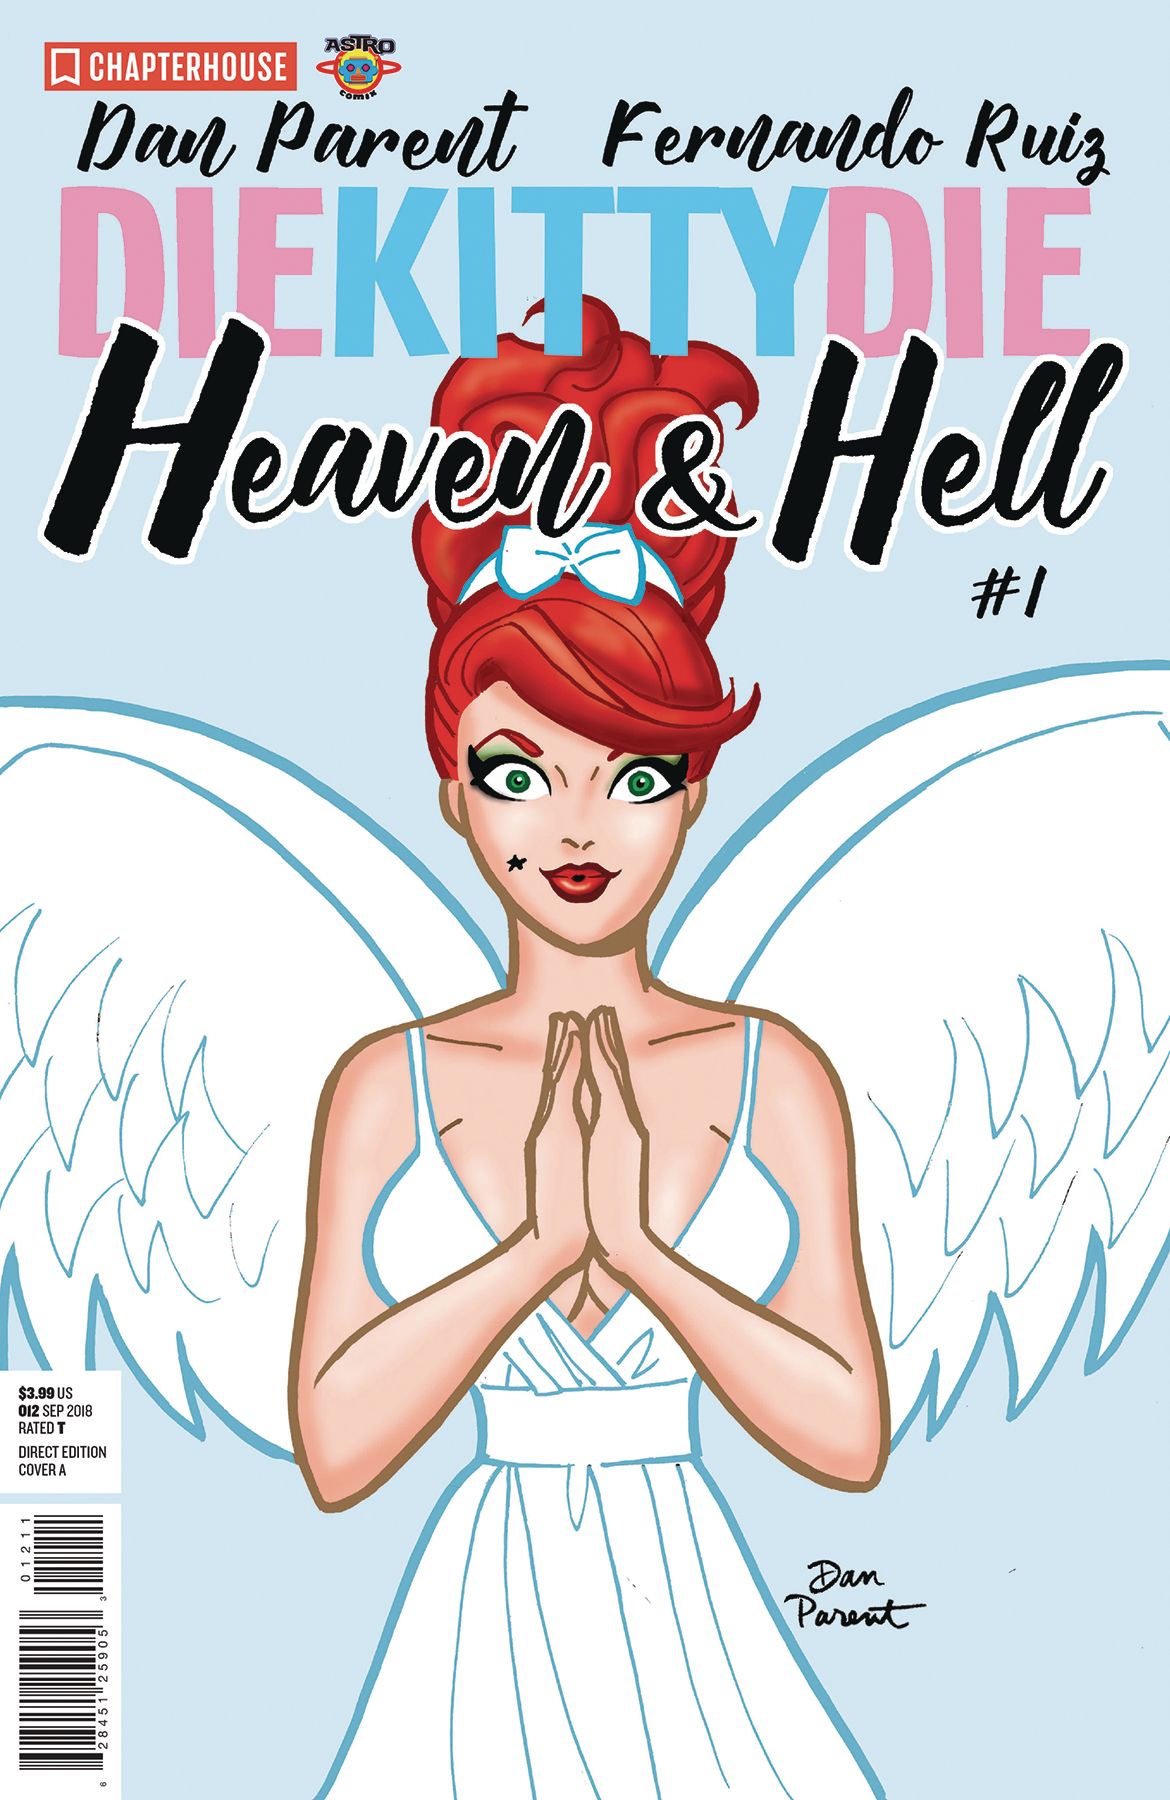 Die Kitty Die! Heaven and Hell #1 Comic